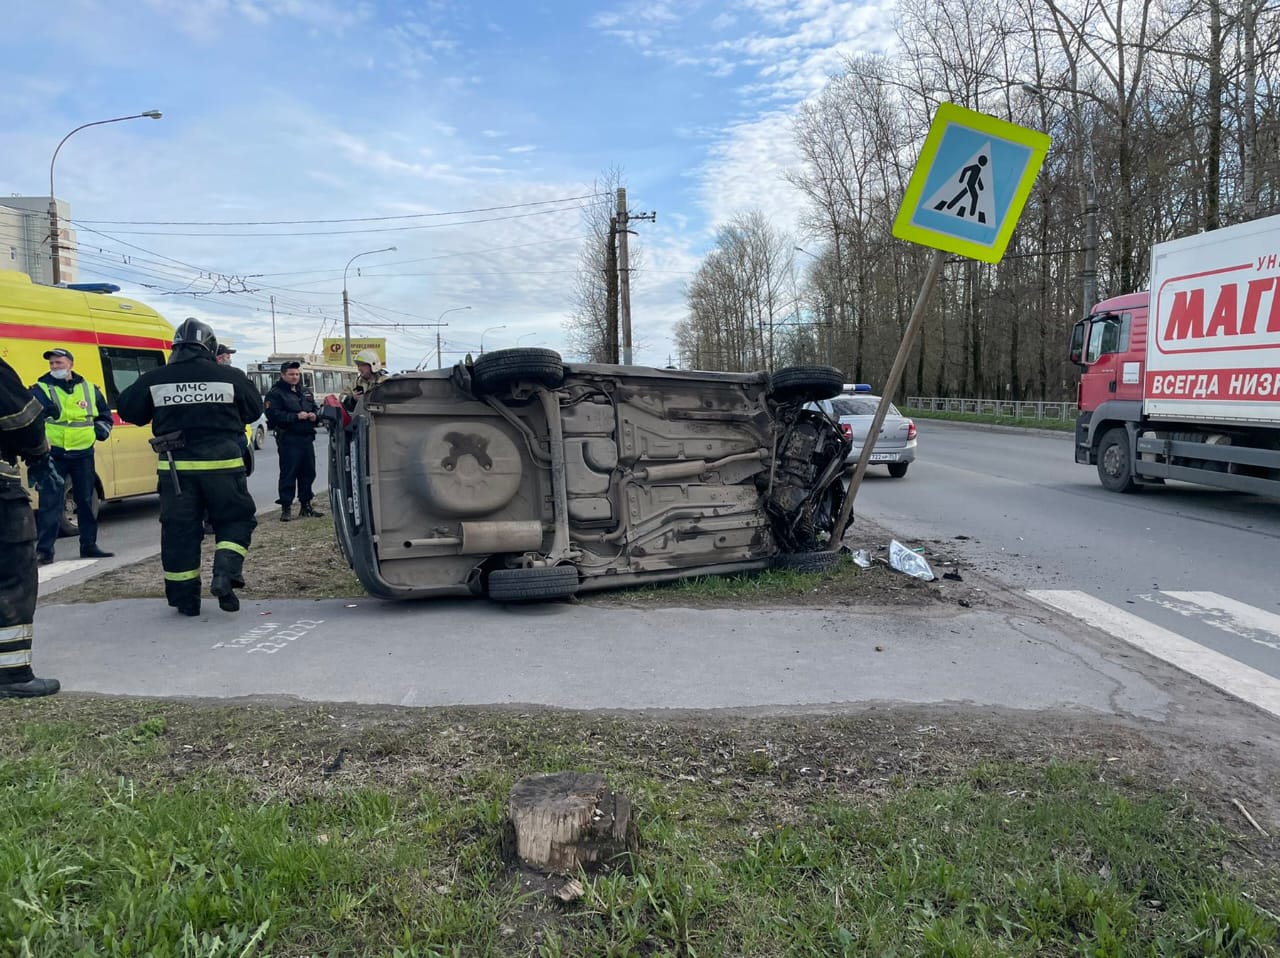 Автомобиль Датсун перевернулся во время погони в Вологде